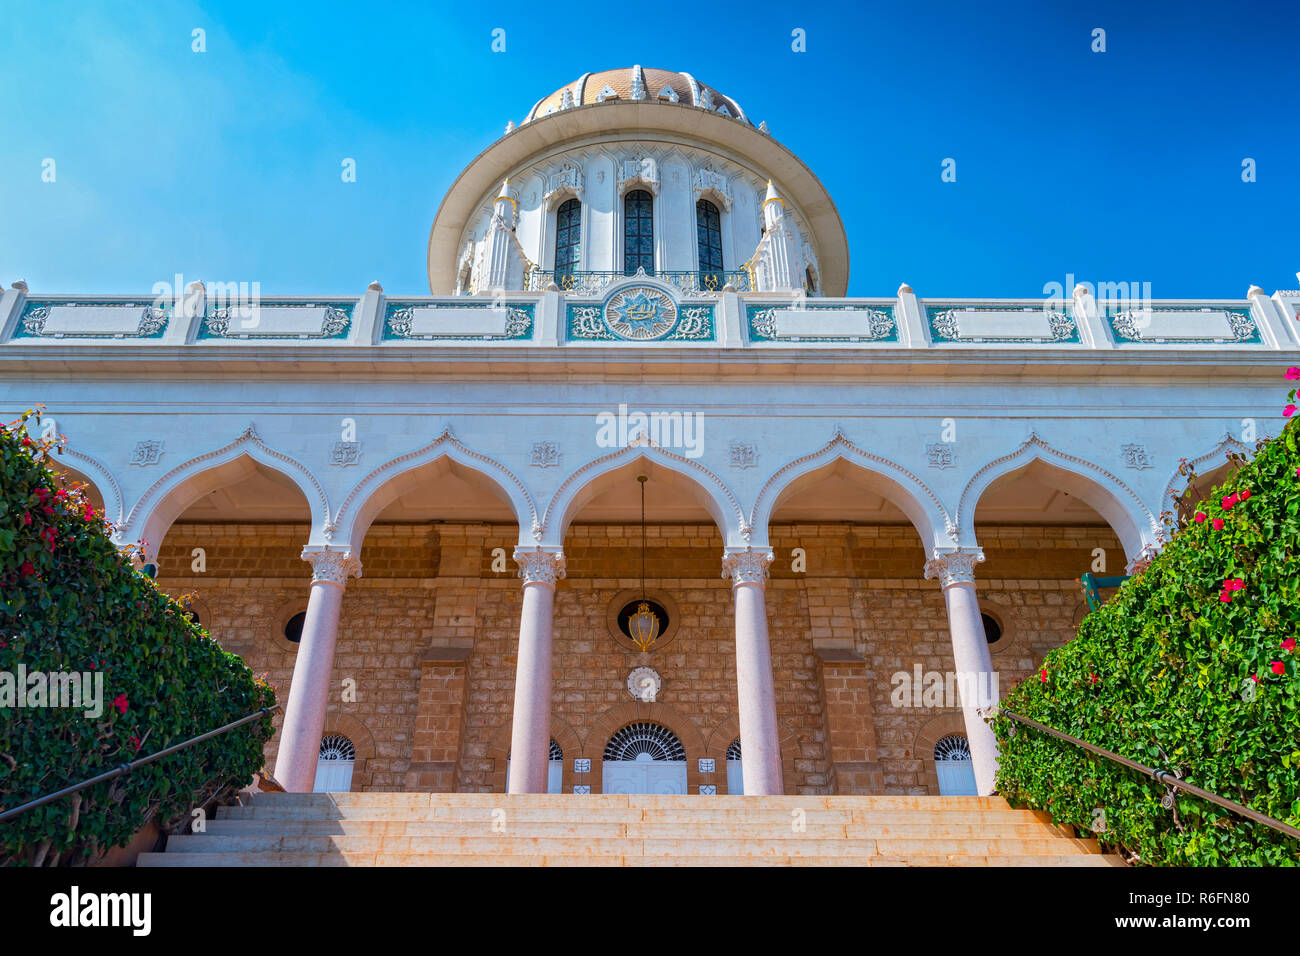 Le Temple Baha'i est l'un des plus célèbres sites et bâtiments à Haïfa, Israël Banque D'Images